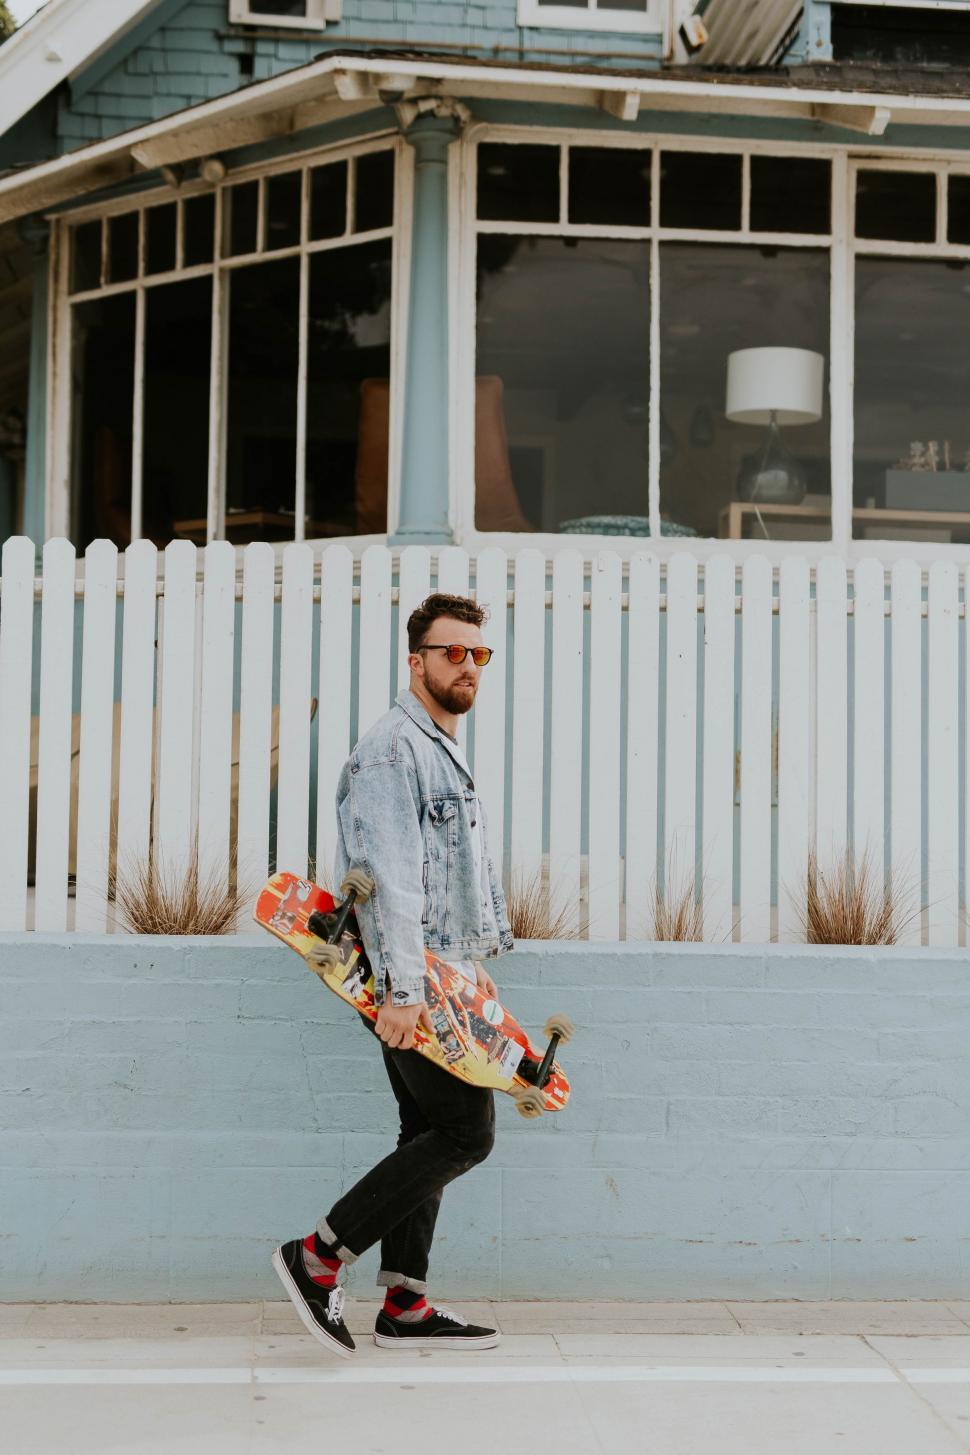 Free Image of Man Walking Down Street Holding Skateboard 